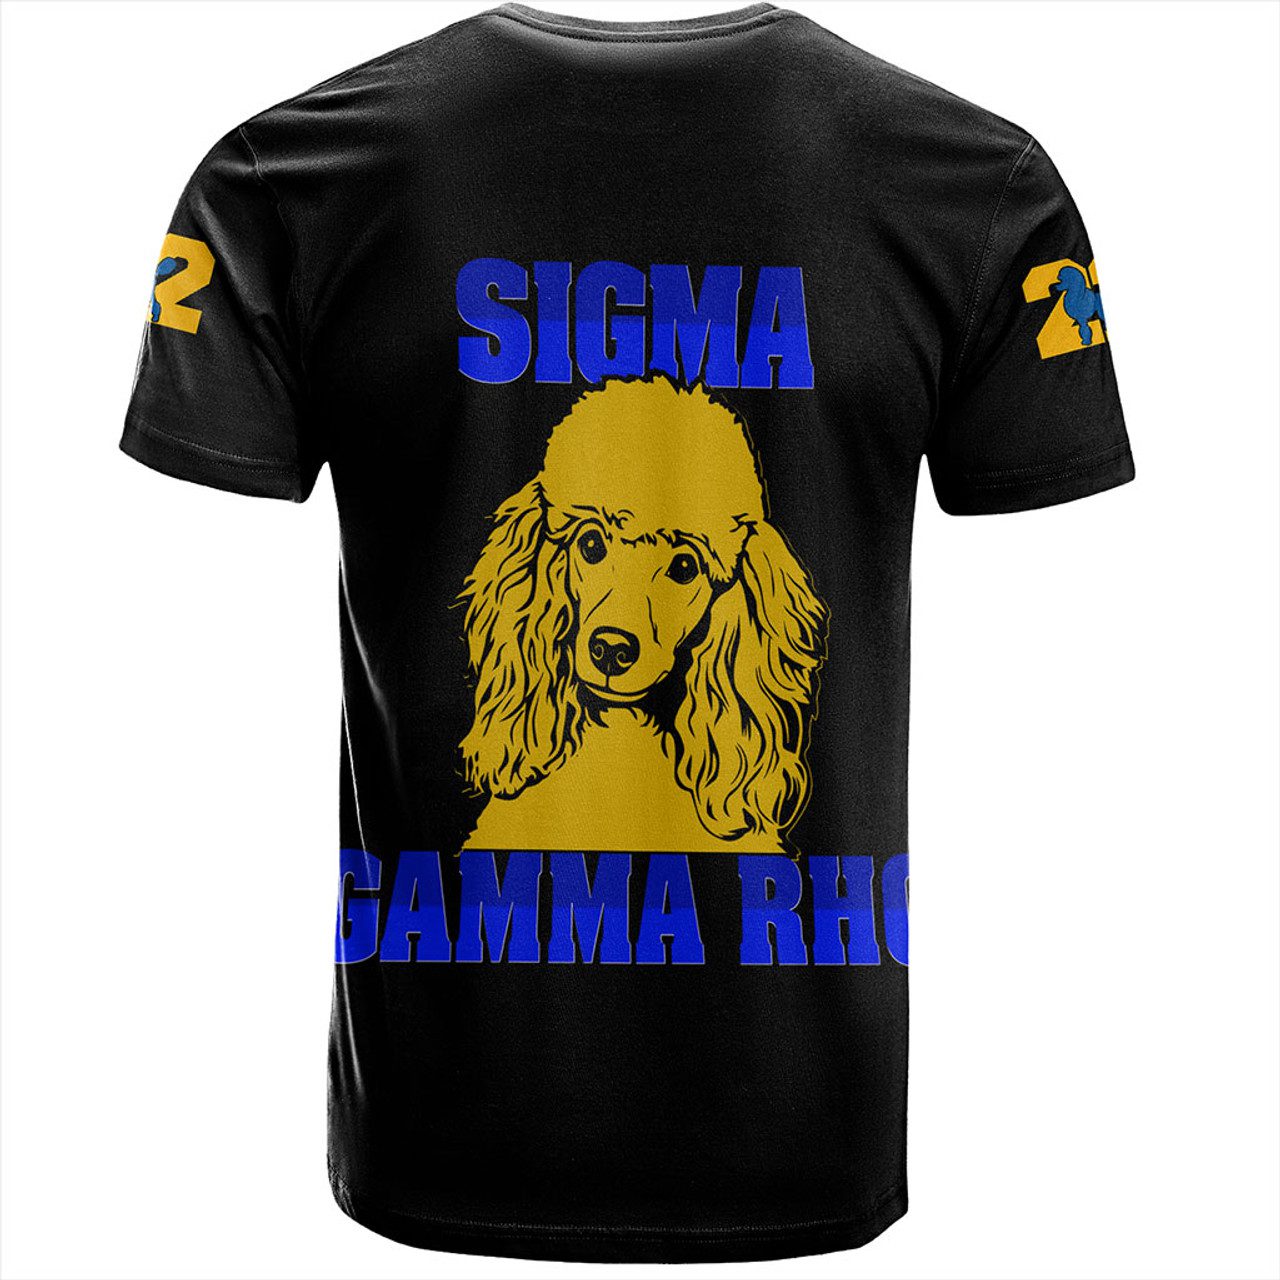 Sigma Gamma Rho T-Shirt Greek Gradution